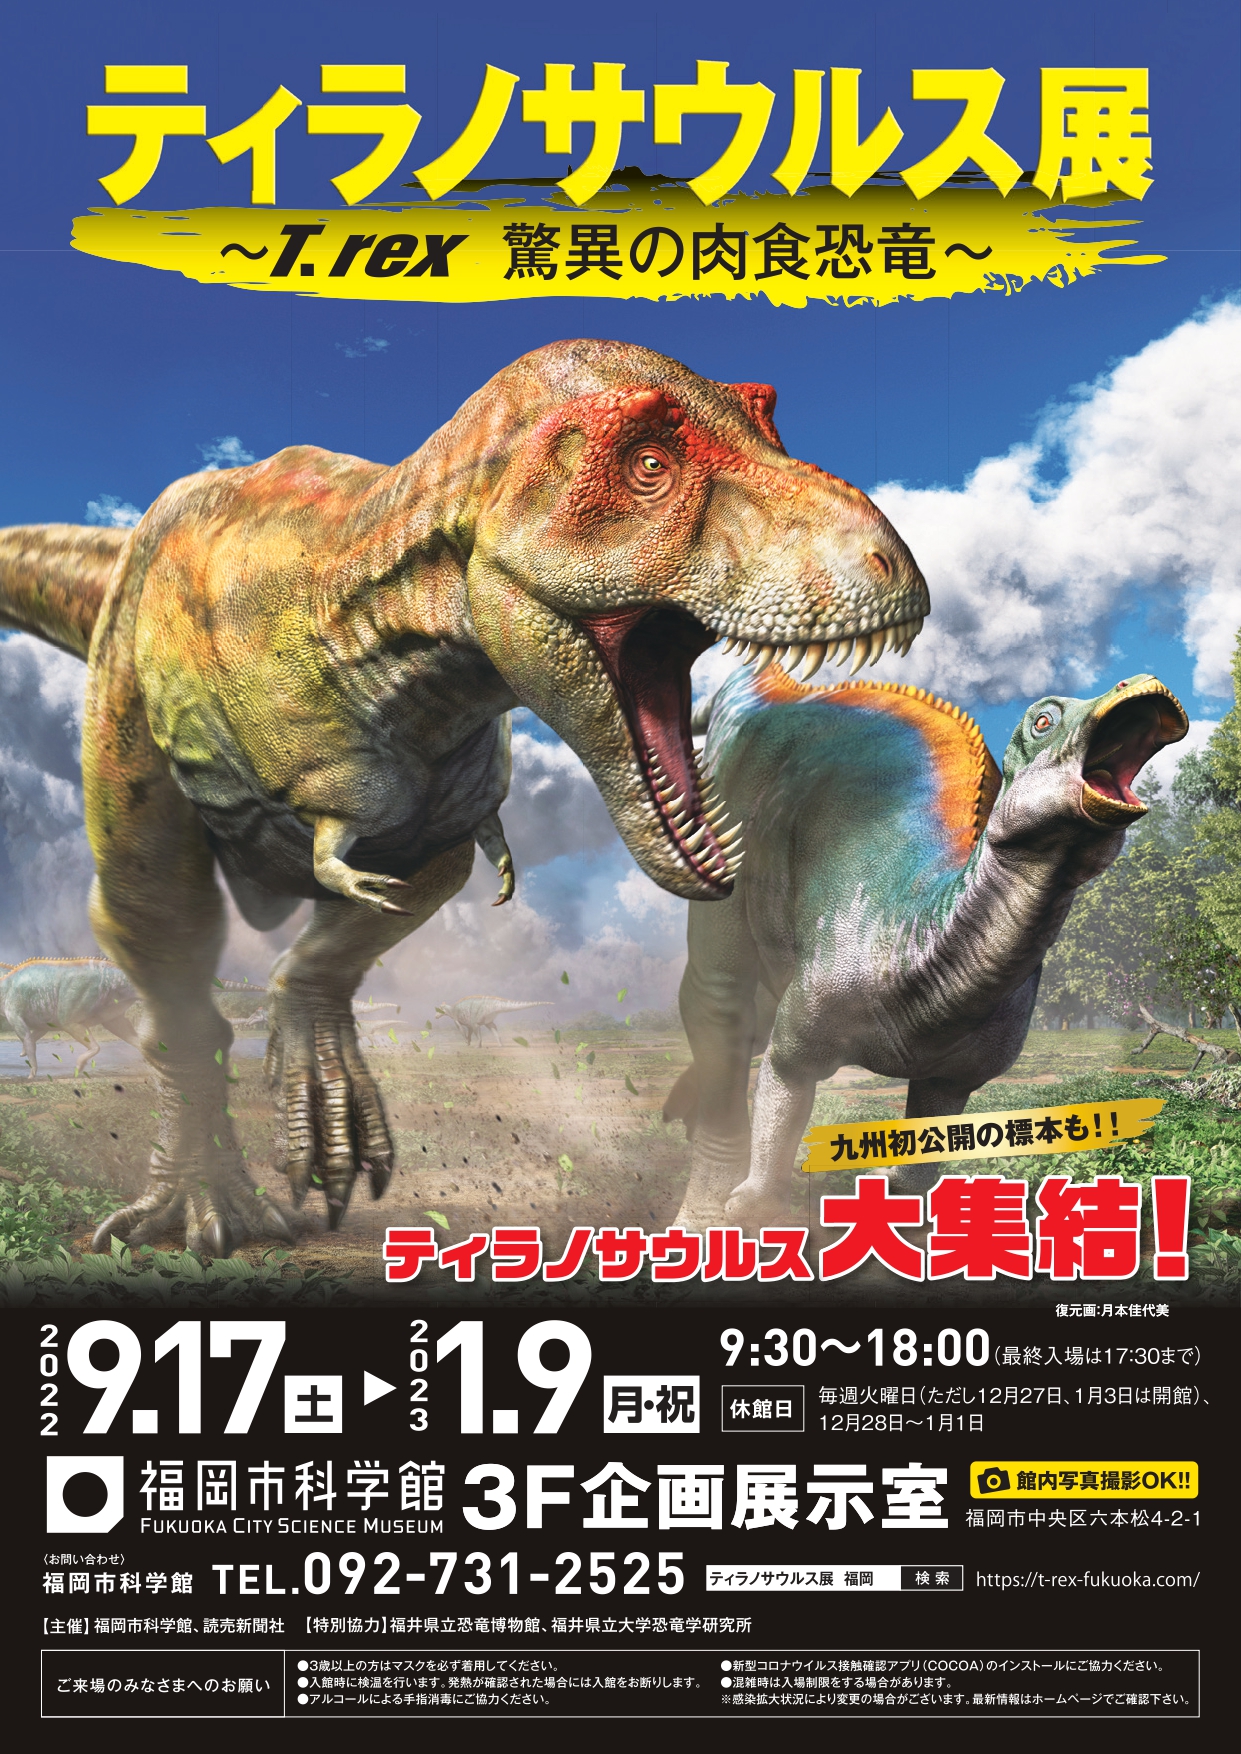 与福冈市科学馆5周年特别展“暴龙展～T.rex惊人的食肉恐龙～”的相互折扣计划